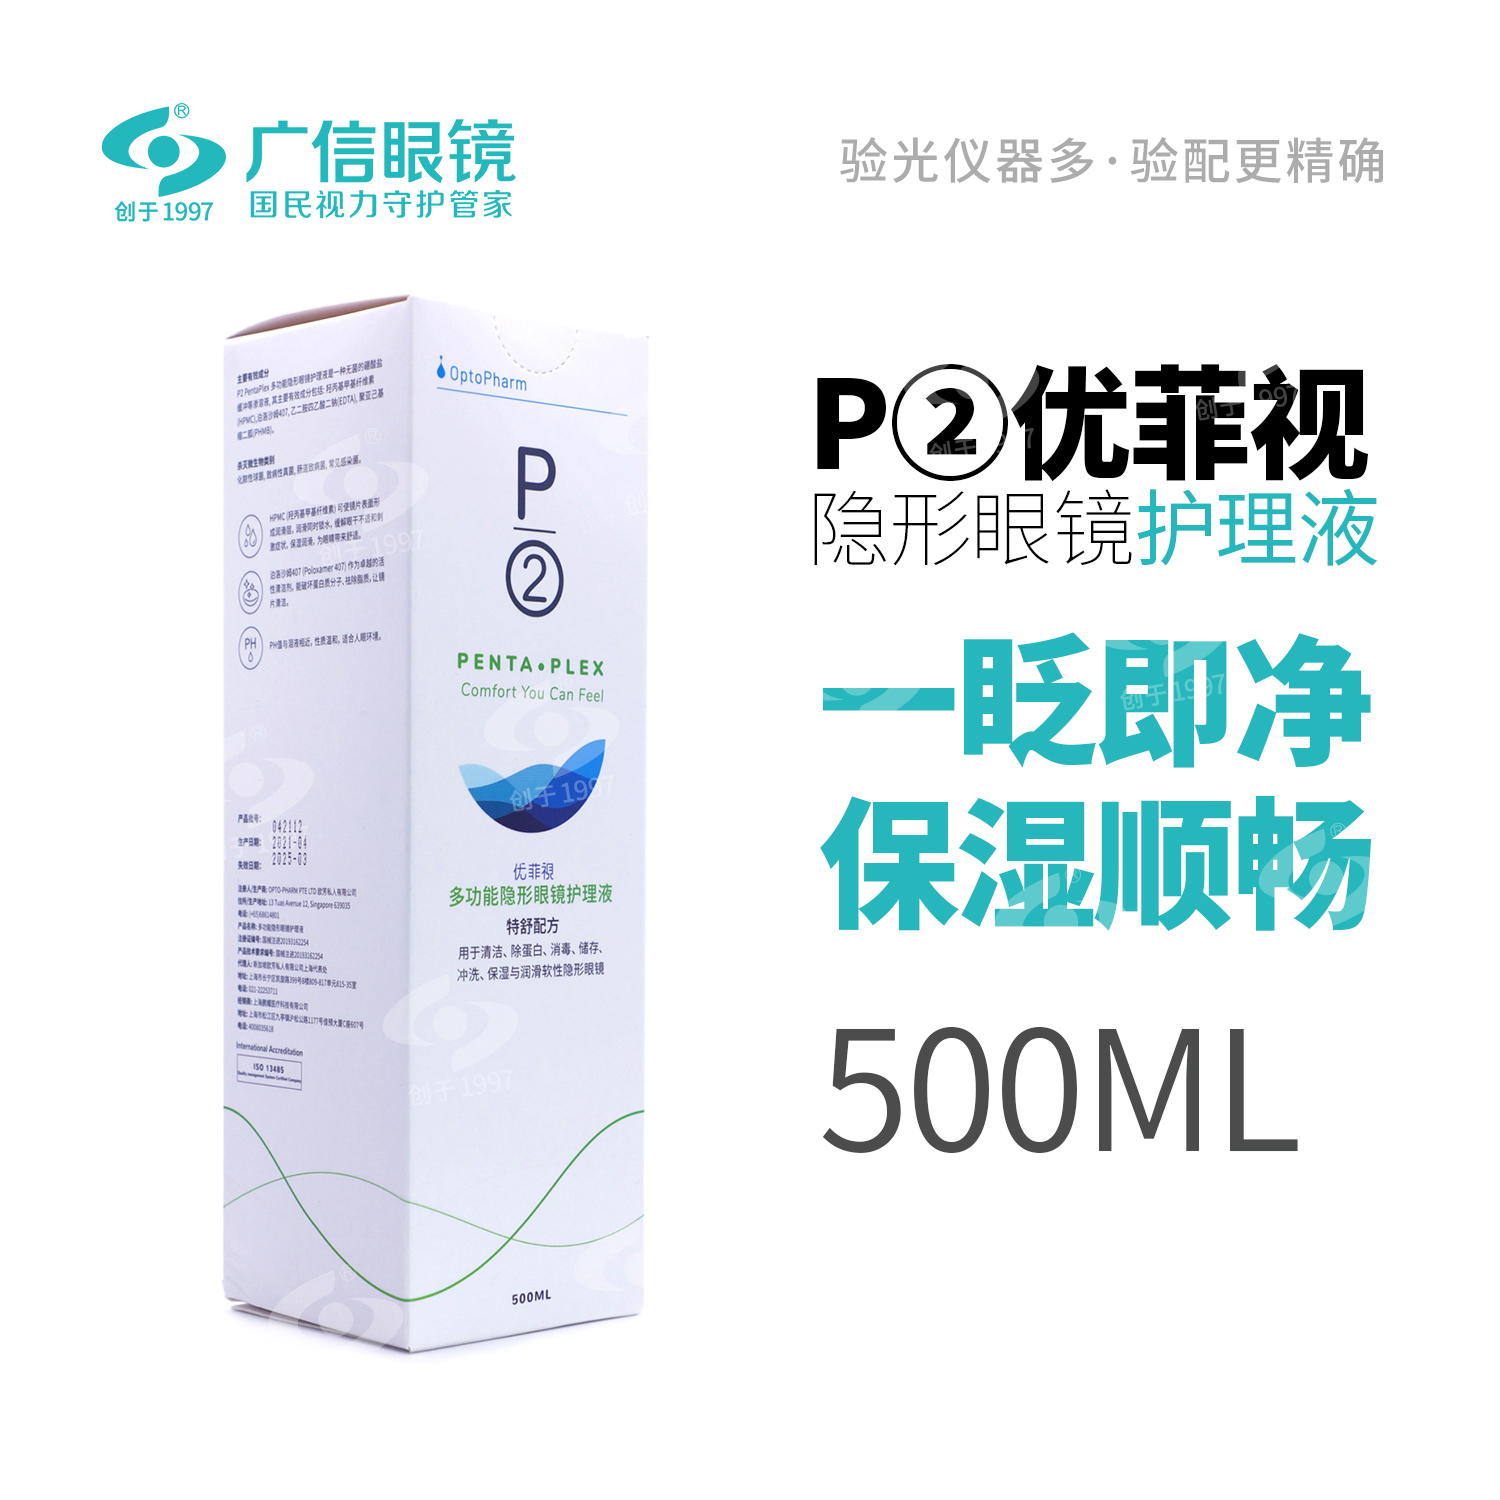 P2优菲视500ml 美瞳隐形近视眼镜护理液除蛋白消毒